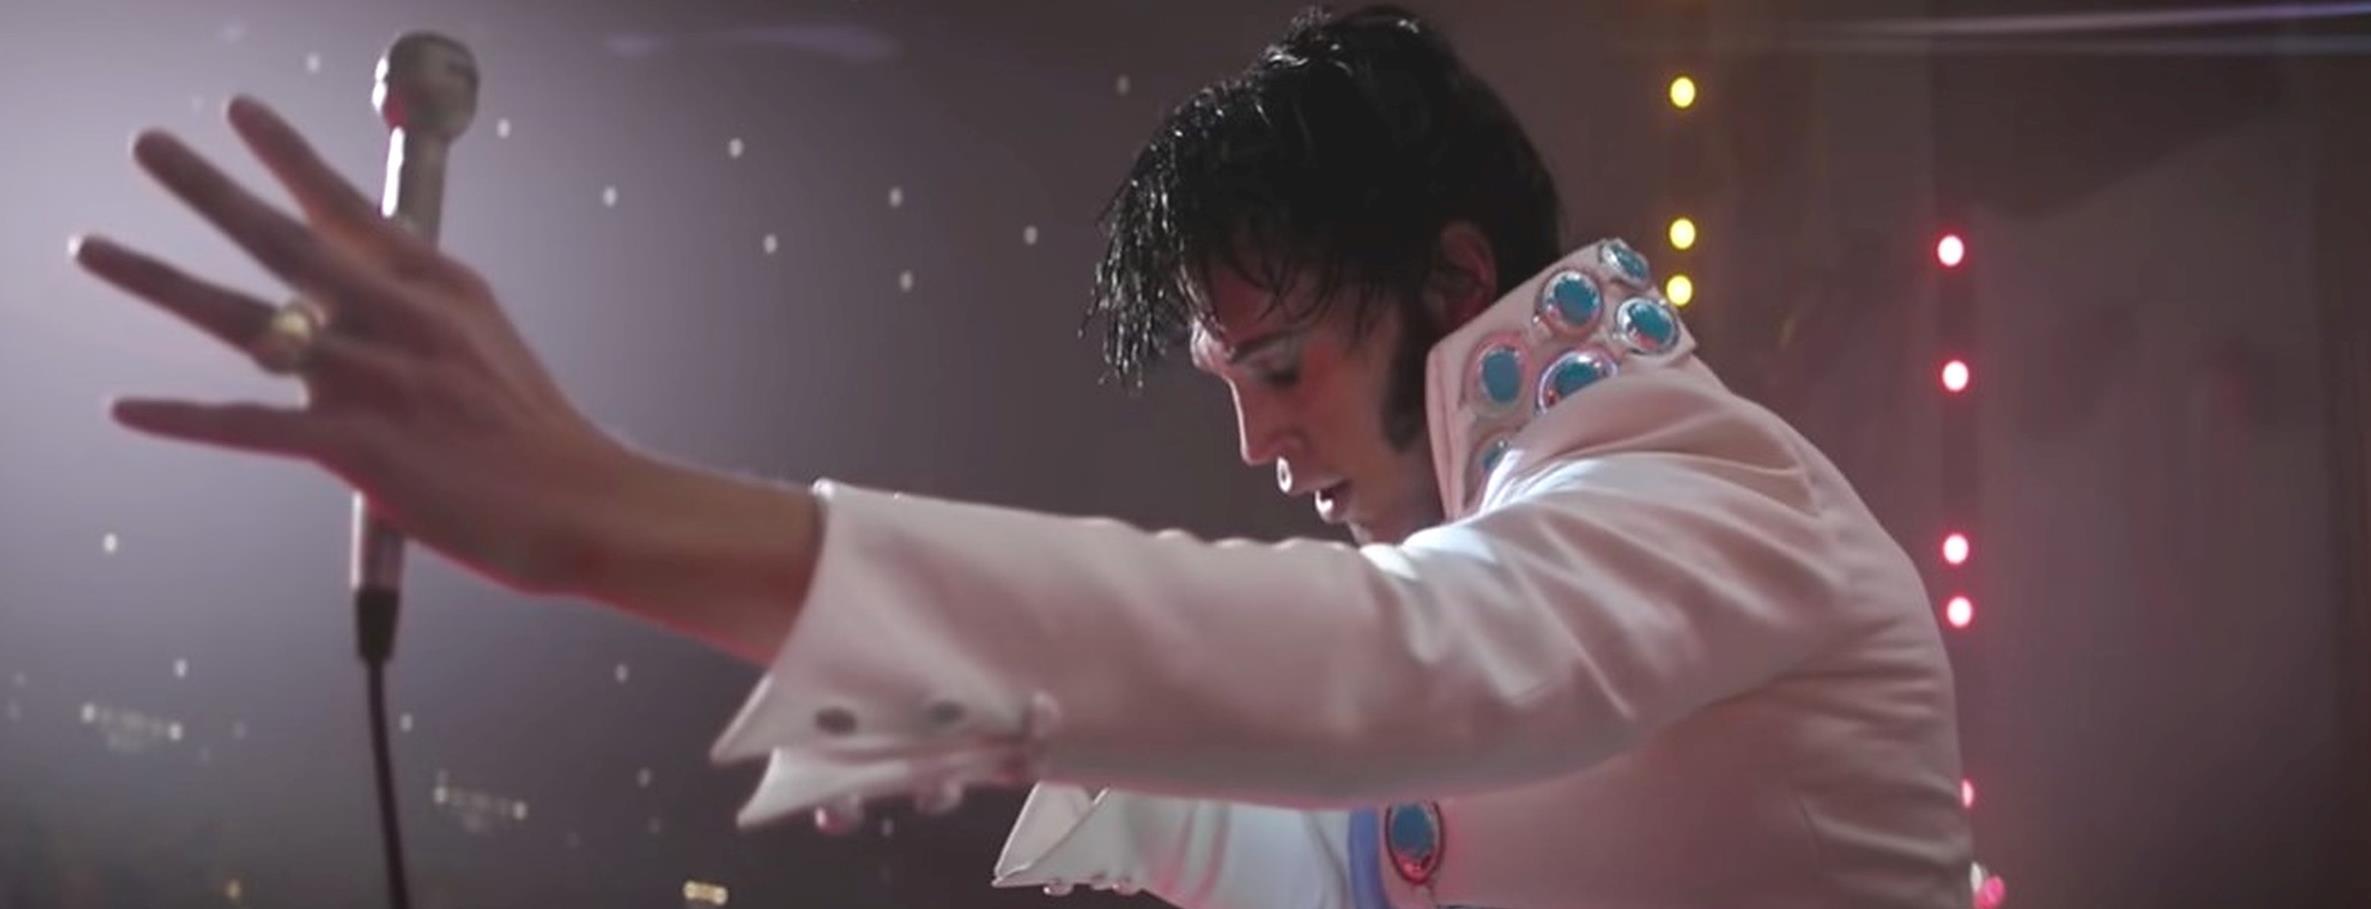 7 film come Elvis che devi assolutamente vedere qk3hSHR 1 1